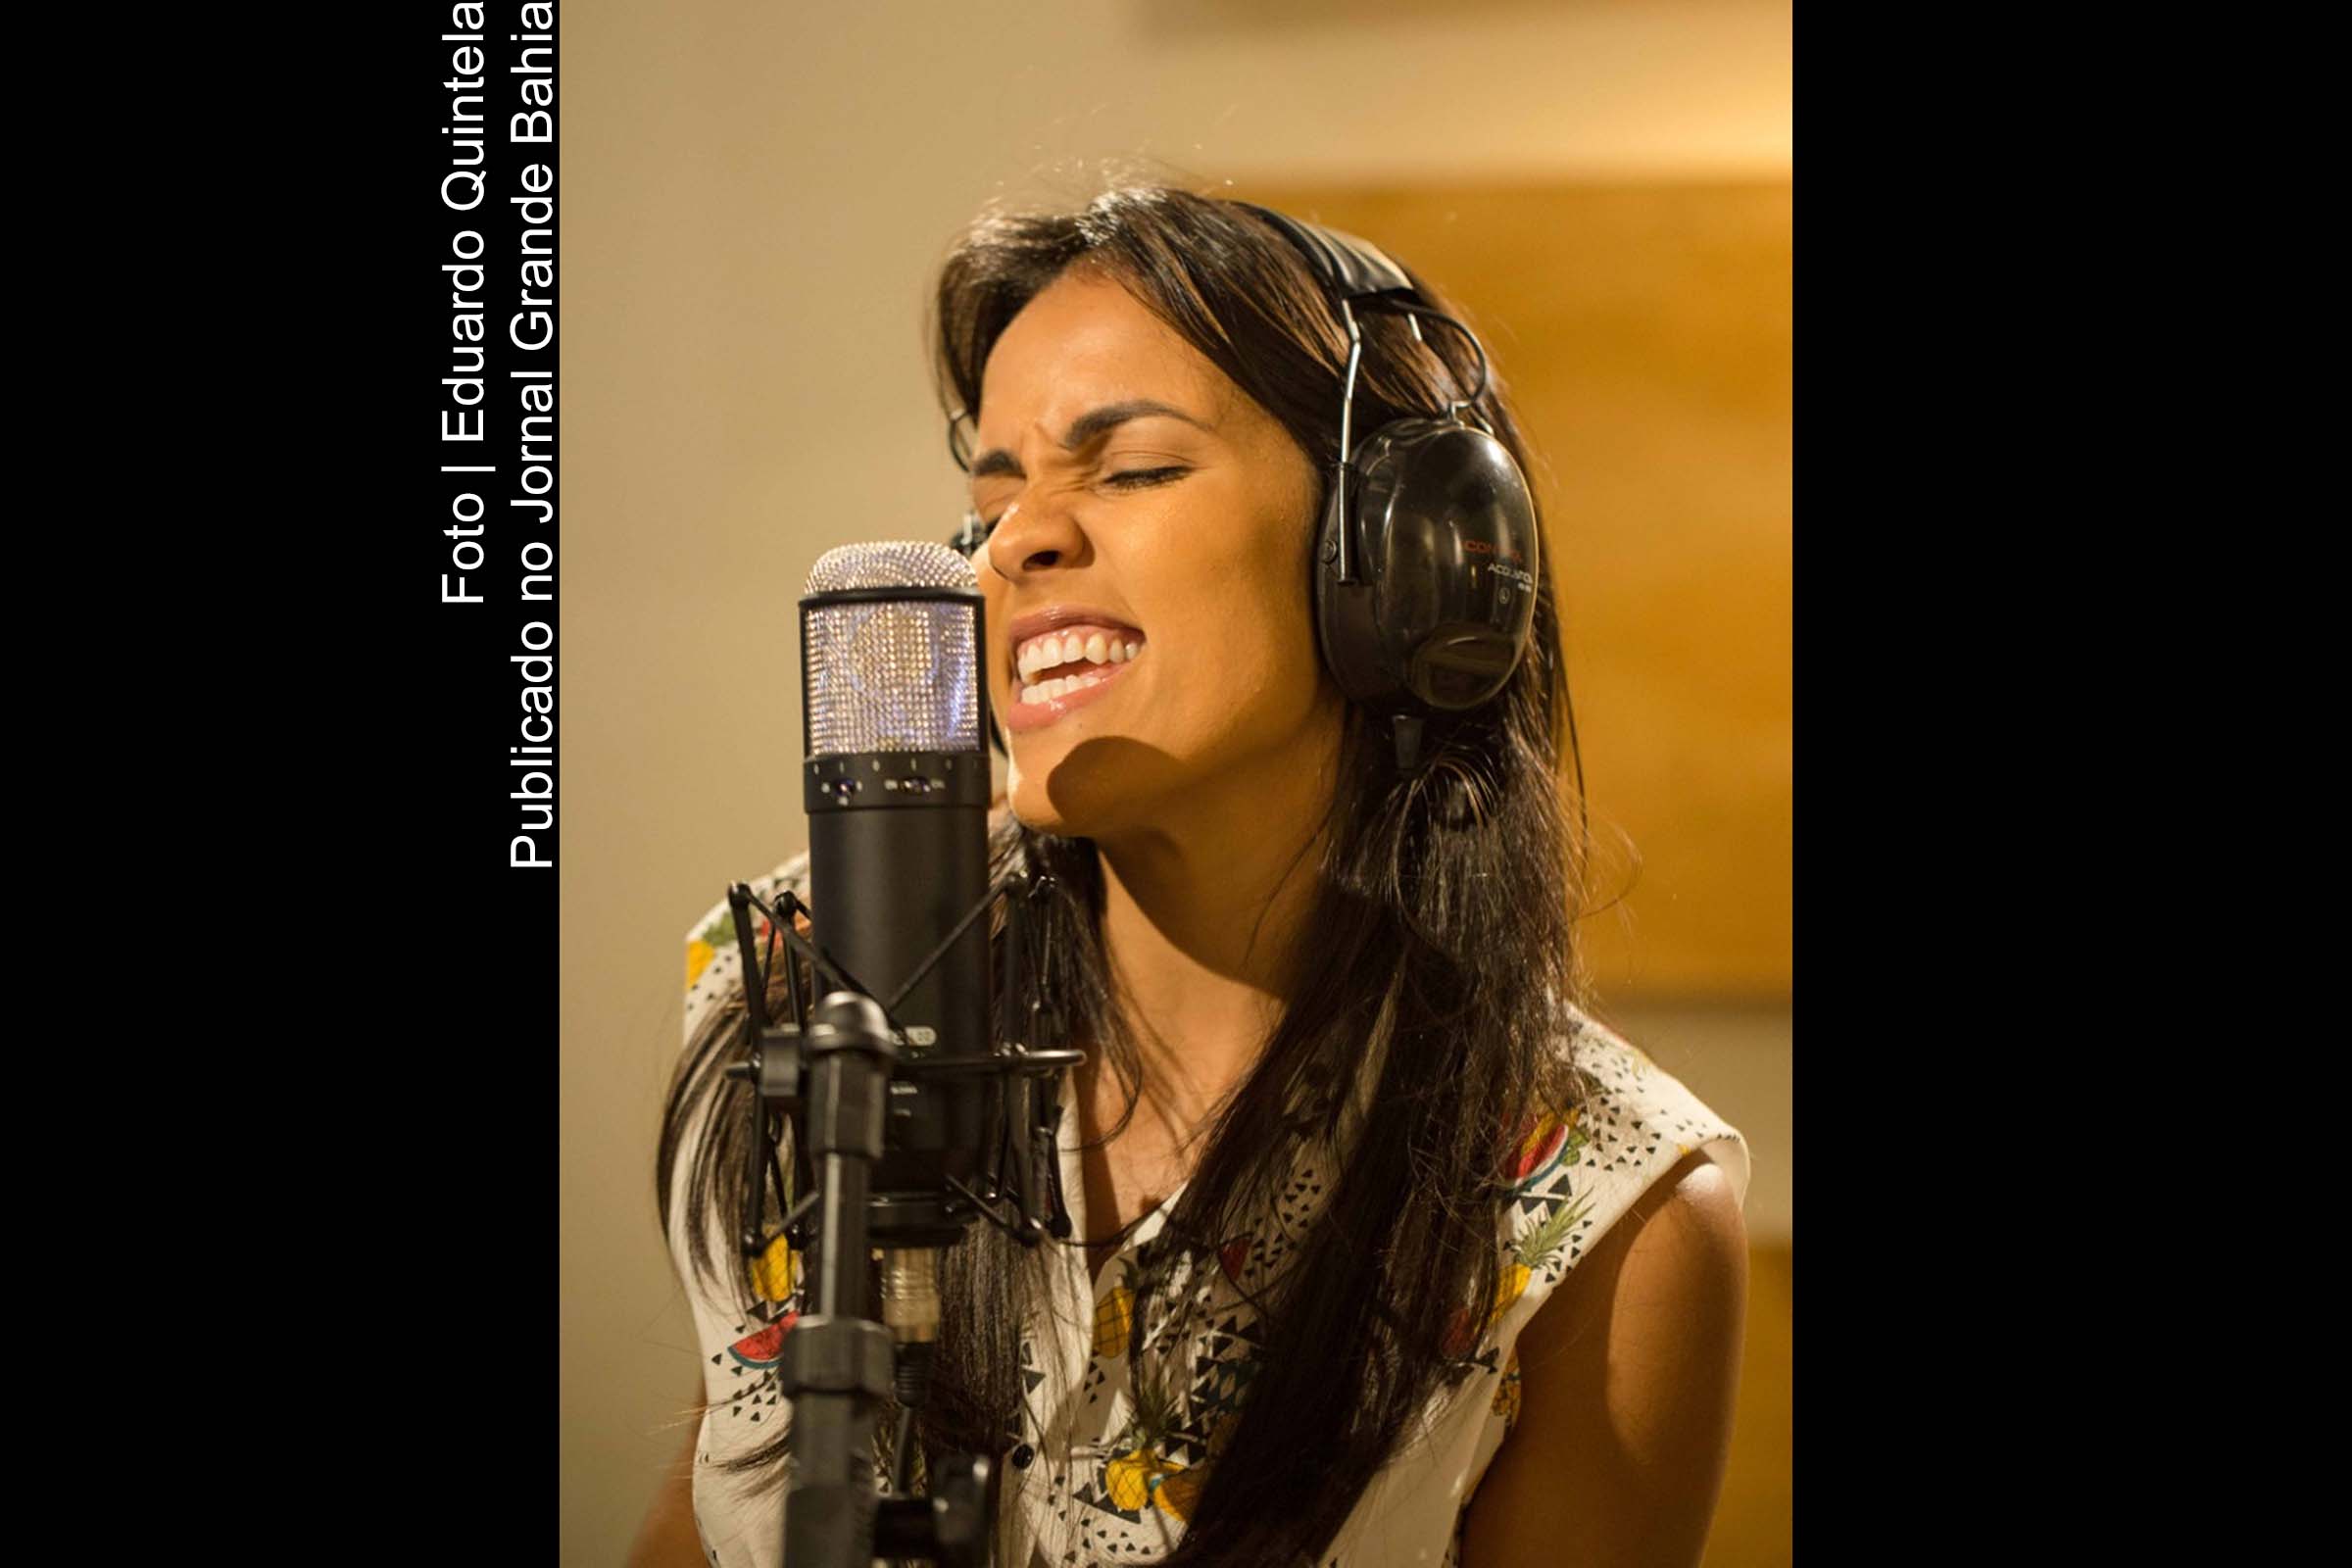 Cantora Ju Moraes a música ‘Vai’, segunda faixa do seu novo álbum autoral.